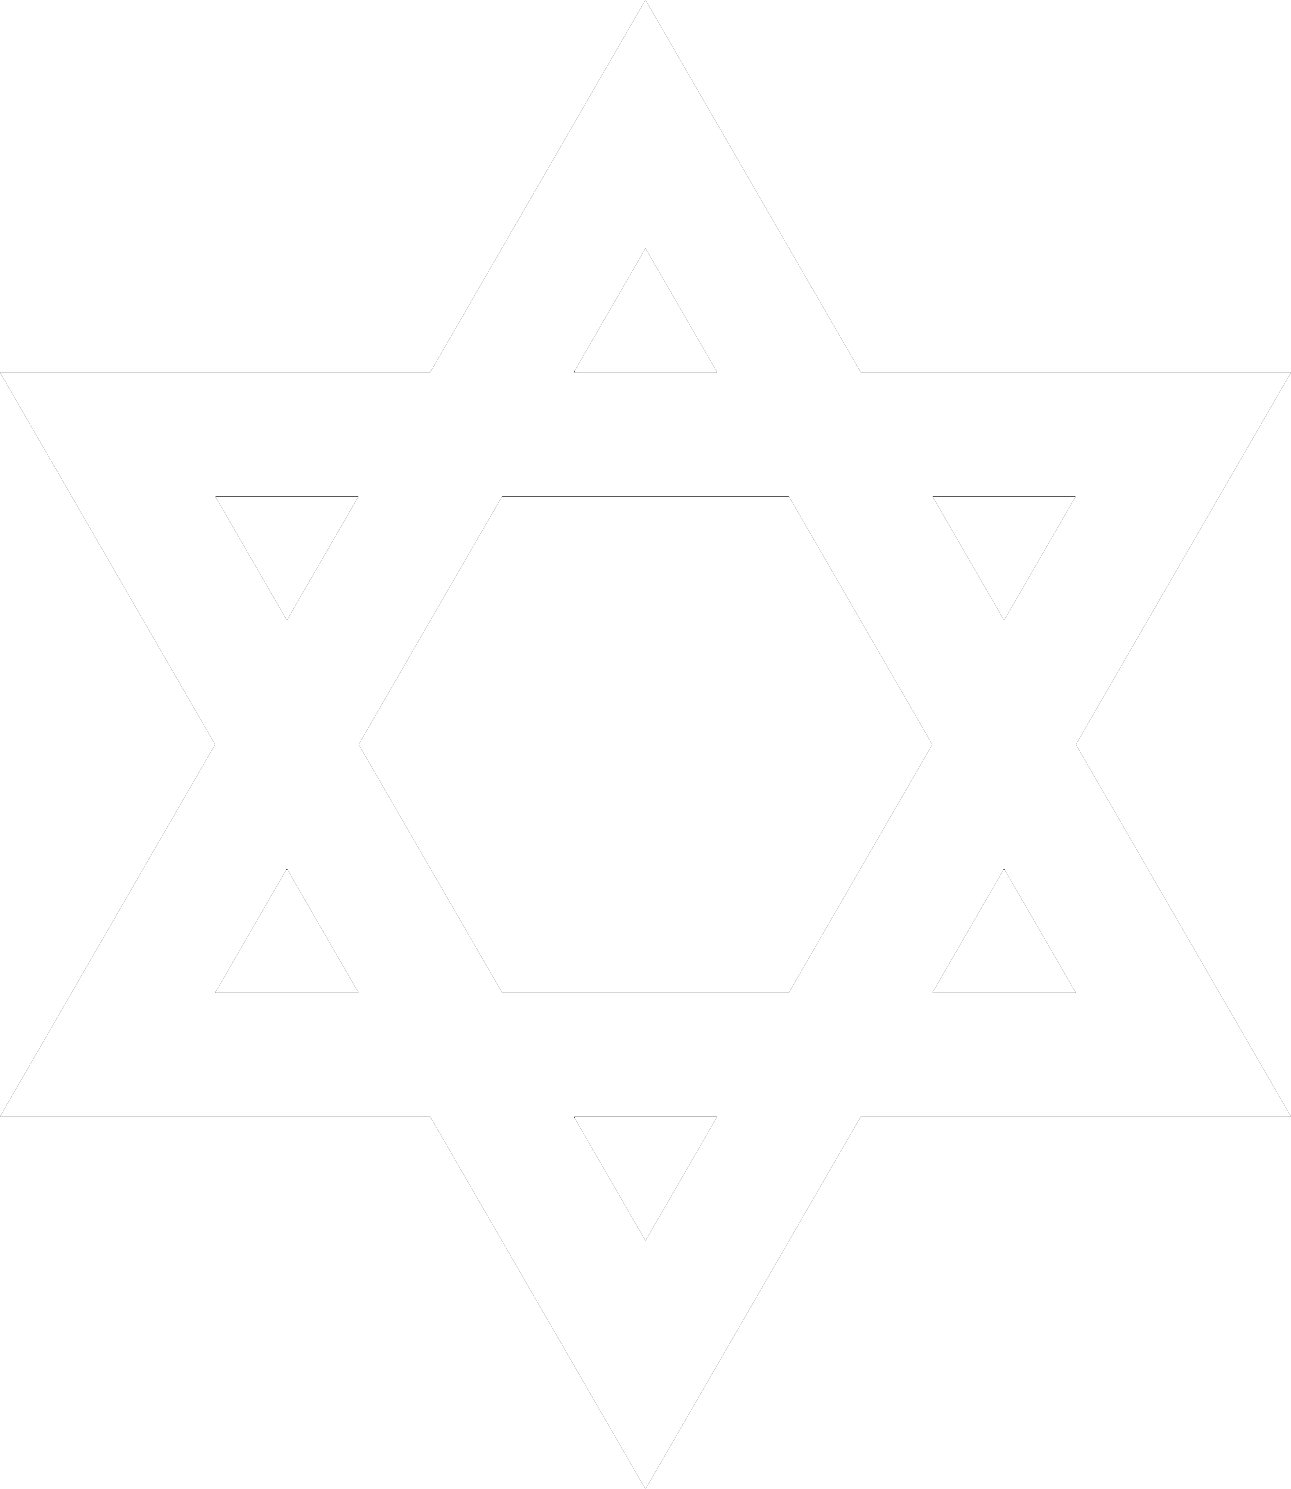 ユダヤ人の星、ダビデの星の像